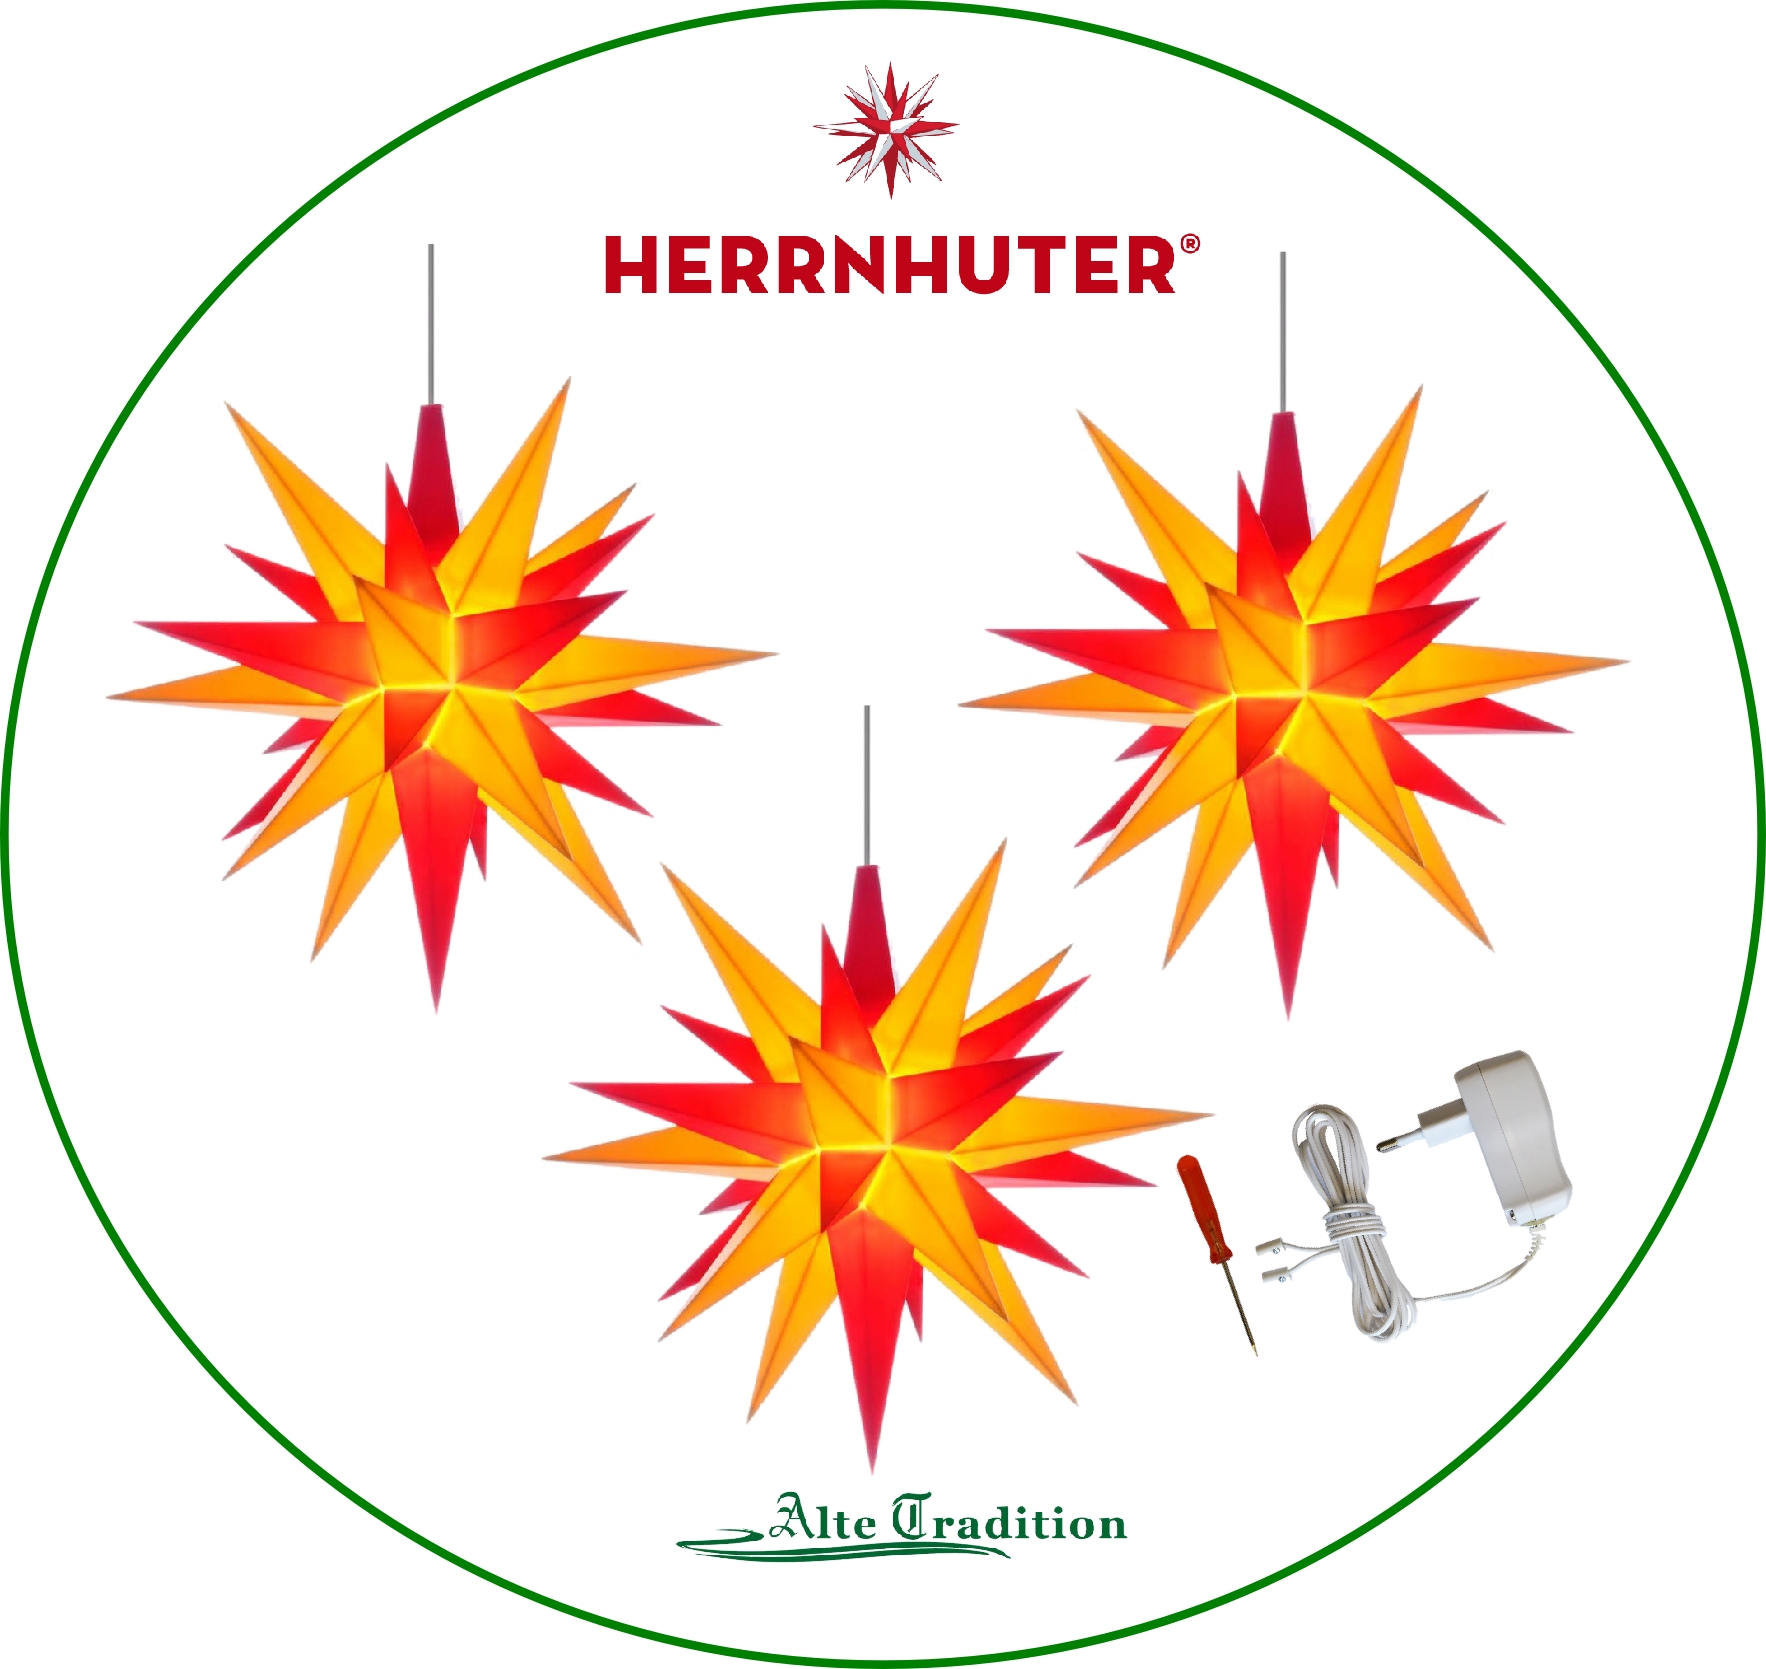 Produktbeschreibung: Herrnhuter Stern 3er SET Stern inkl.3er Netzteil ...